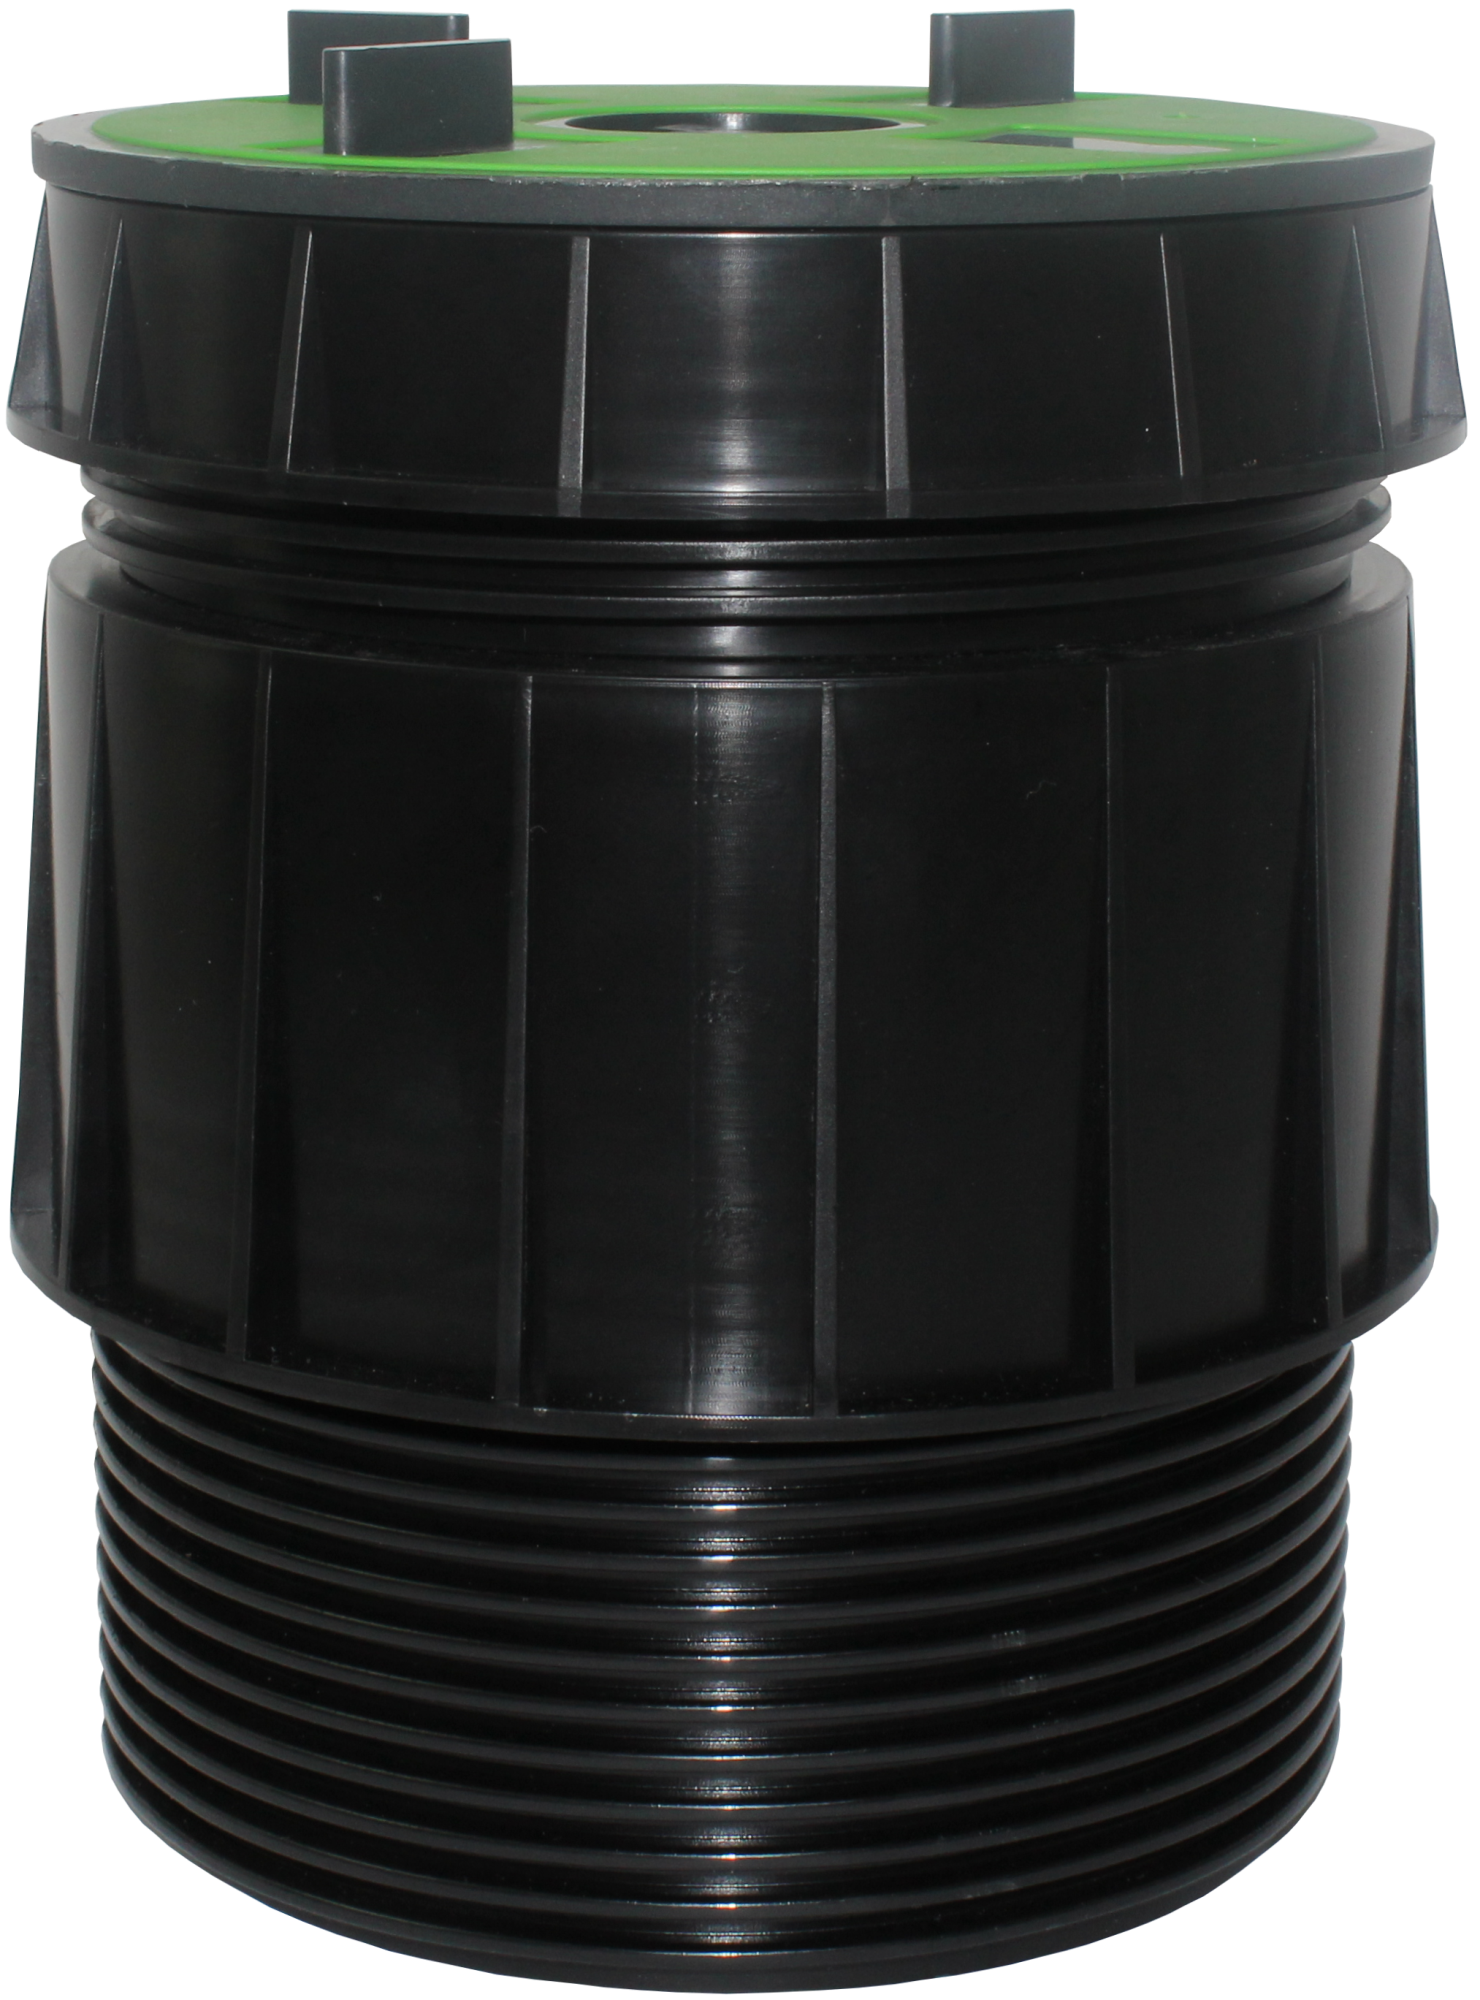 VOLFI Teleskop Dreh-Stelzlager, 5-tlg. Kunststoff, TL-VT100, 3Stege 6/10-140mm, verstb.100-175mm